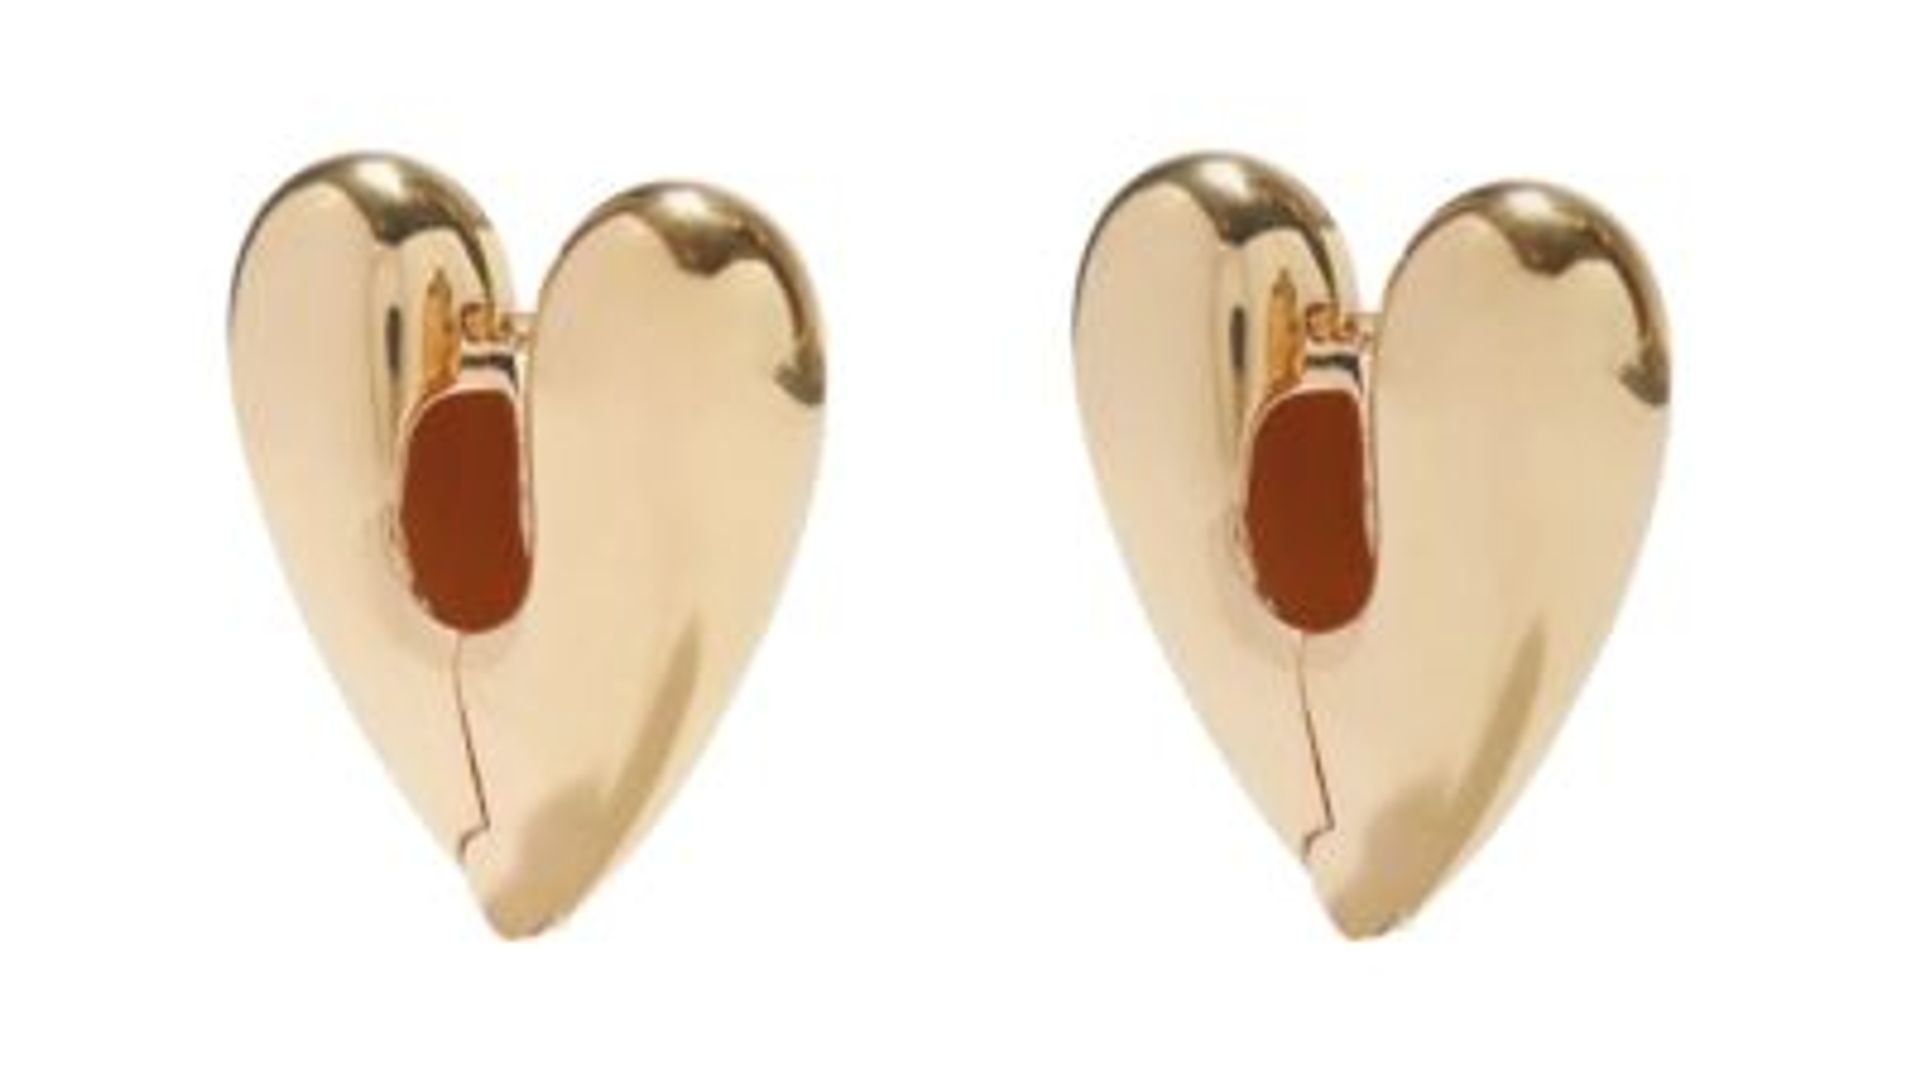 Silver 3D Heart Statement Earrings